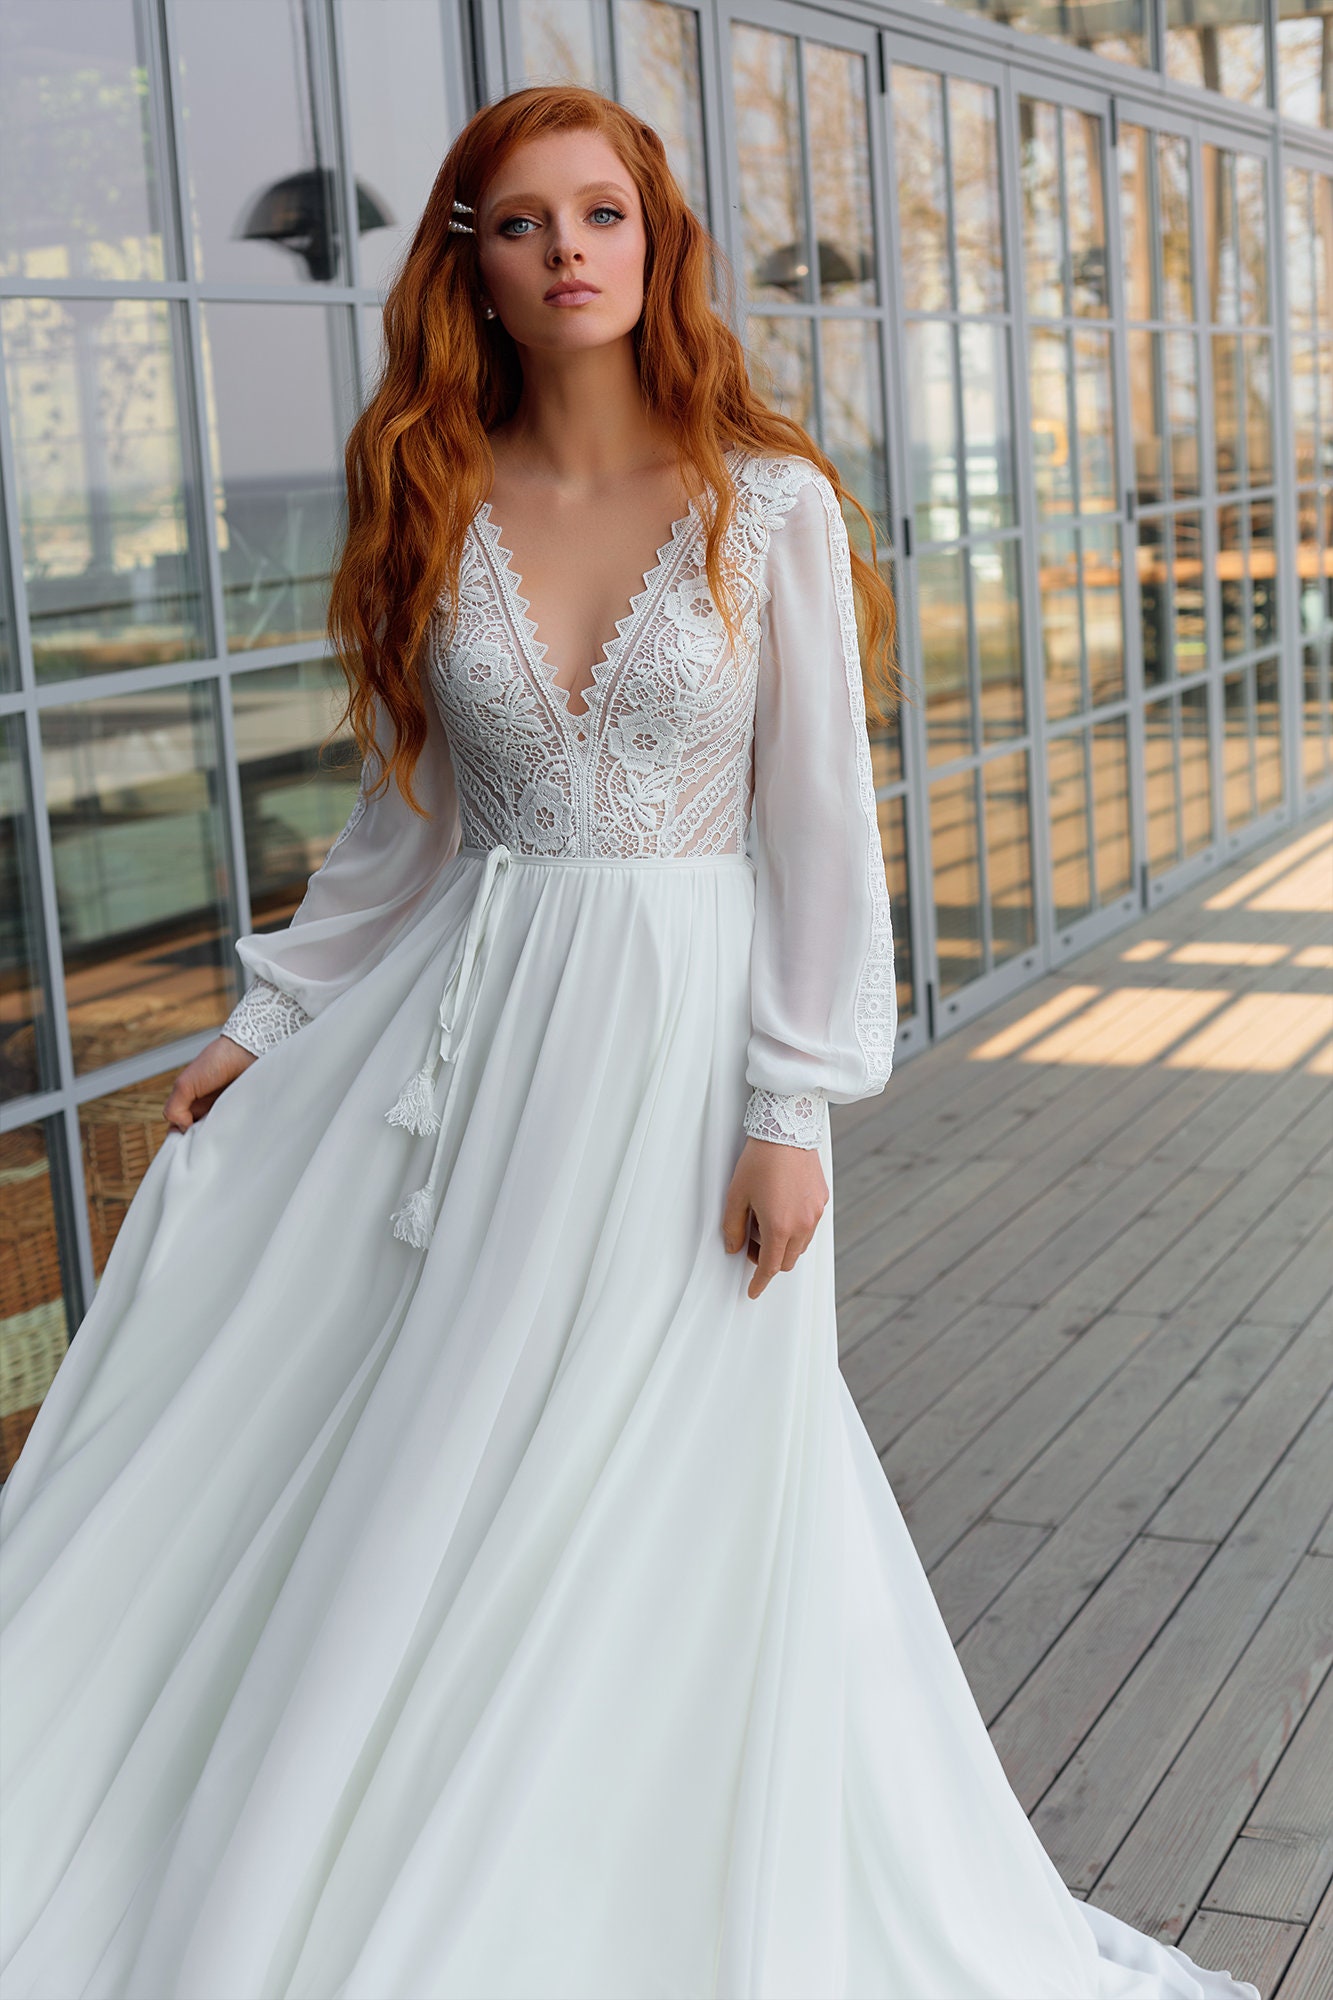 Boho Wedding Dress Long Sleeves Cotton Lace Wedding Dress - Etsy